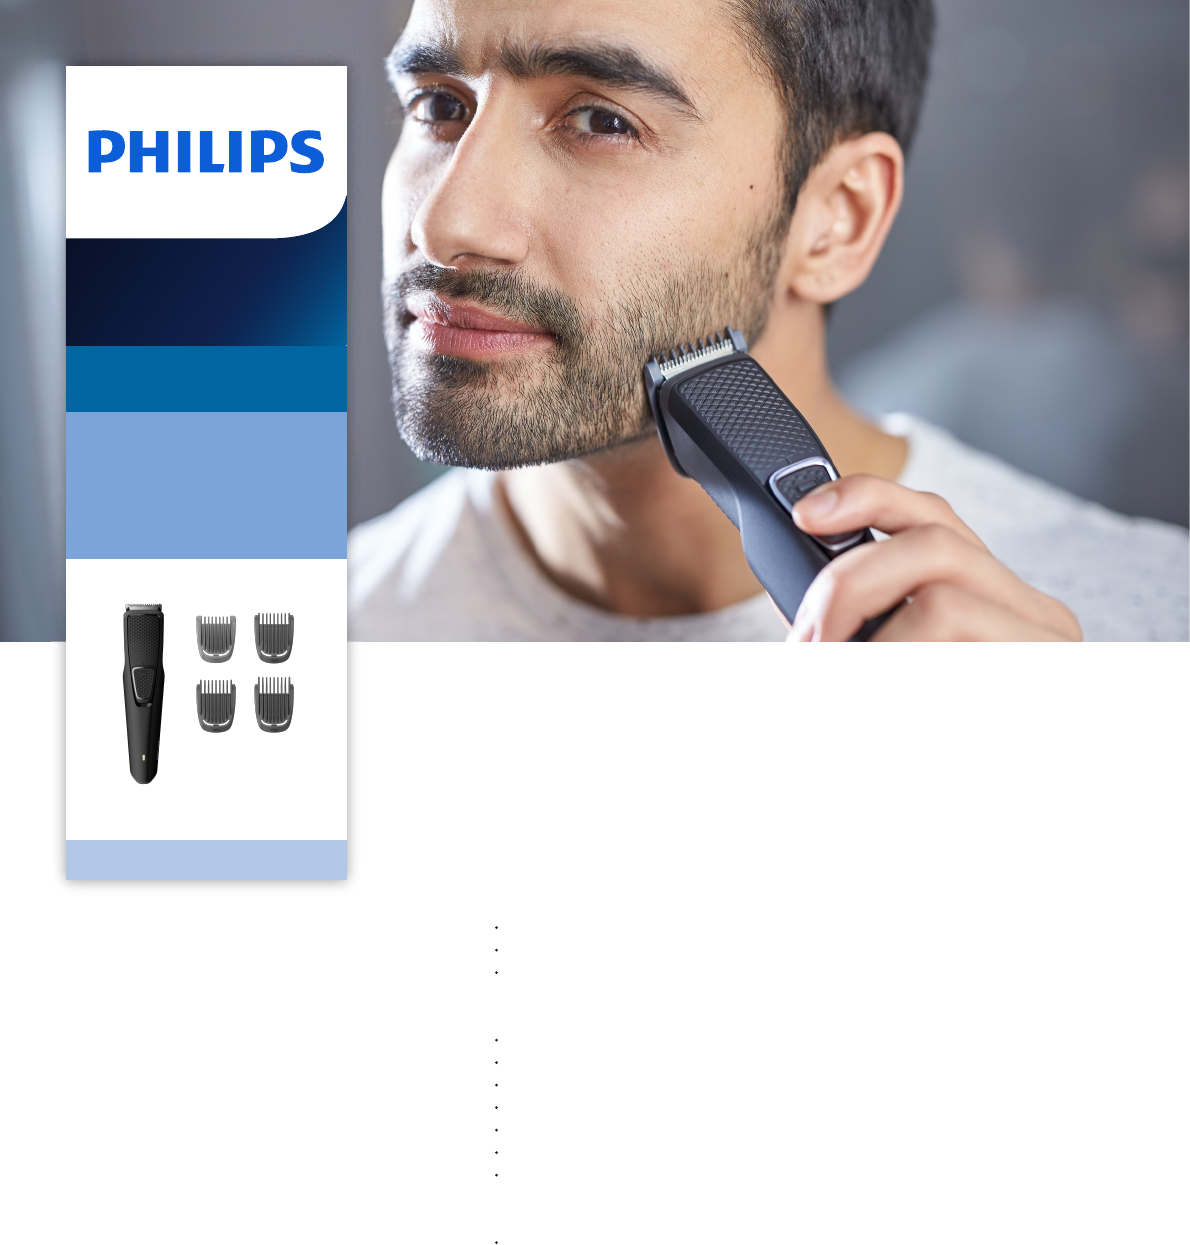 philips trimmer series 1000 bt1215